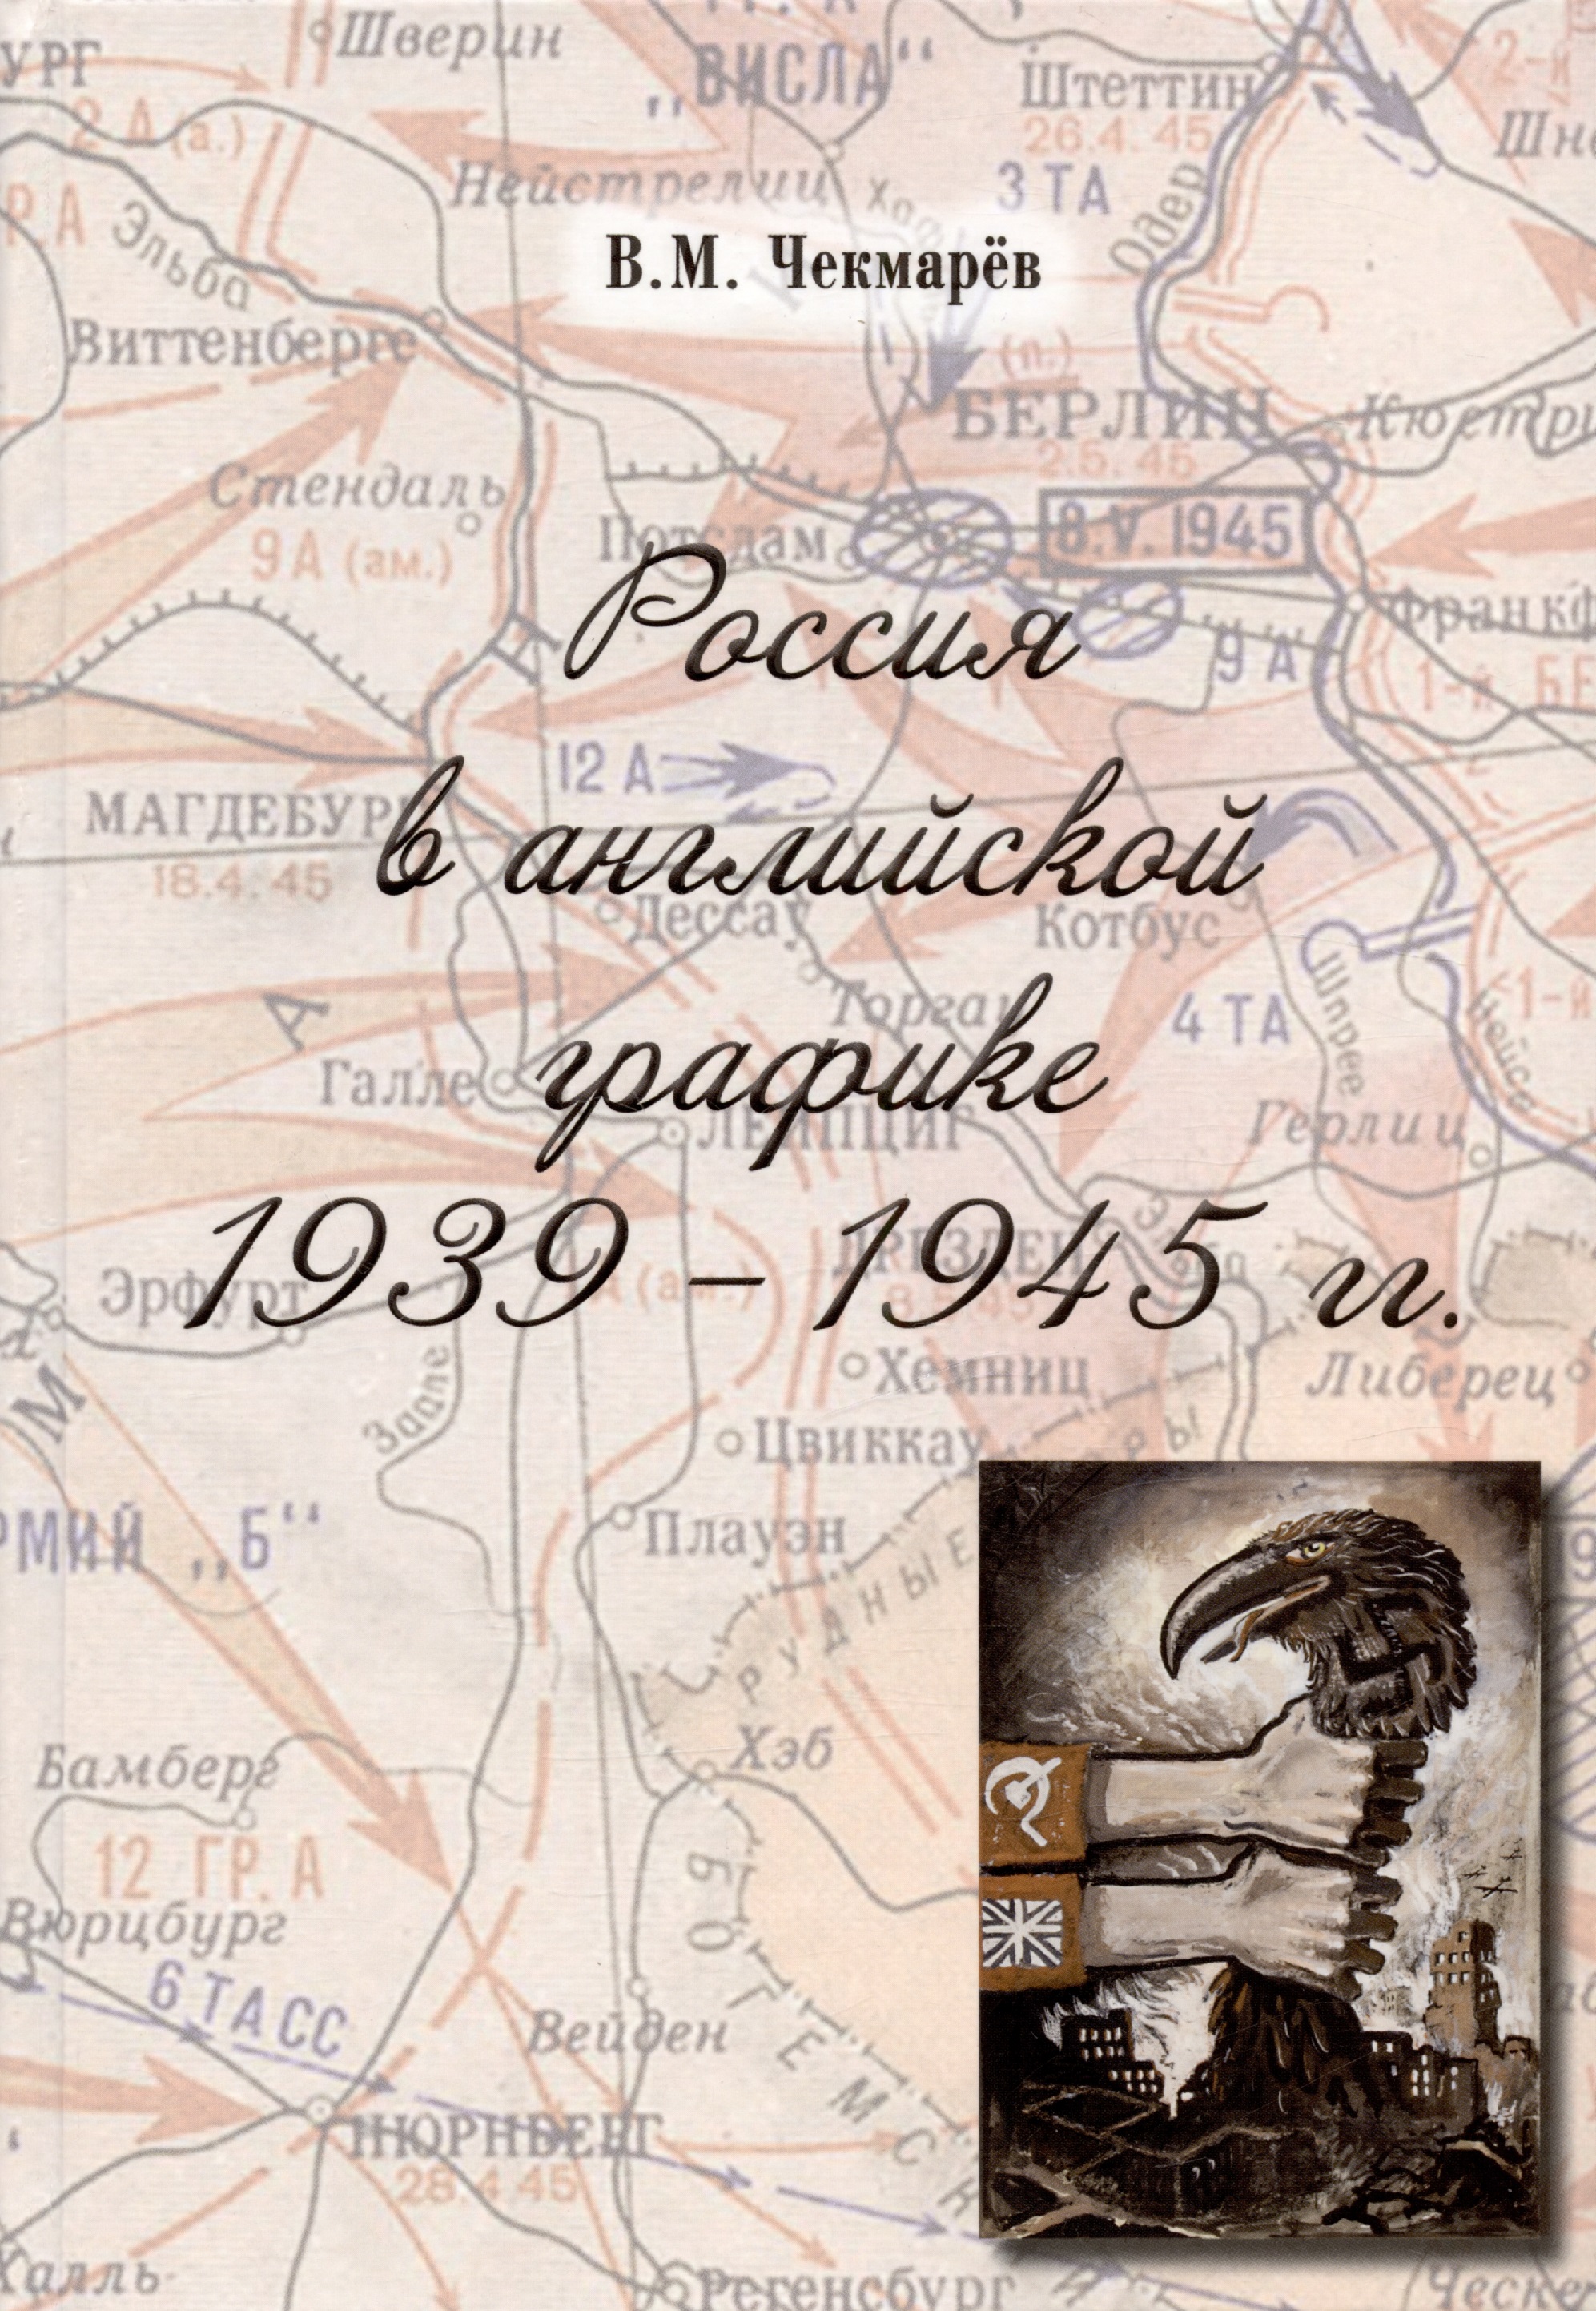 Россия в английской графике. 1939-1945 гг.